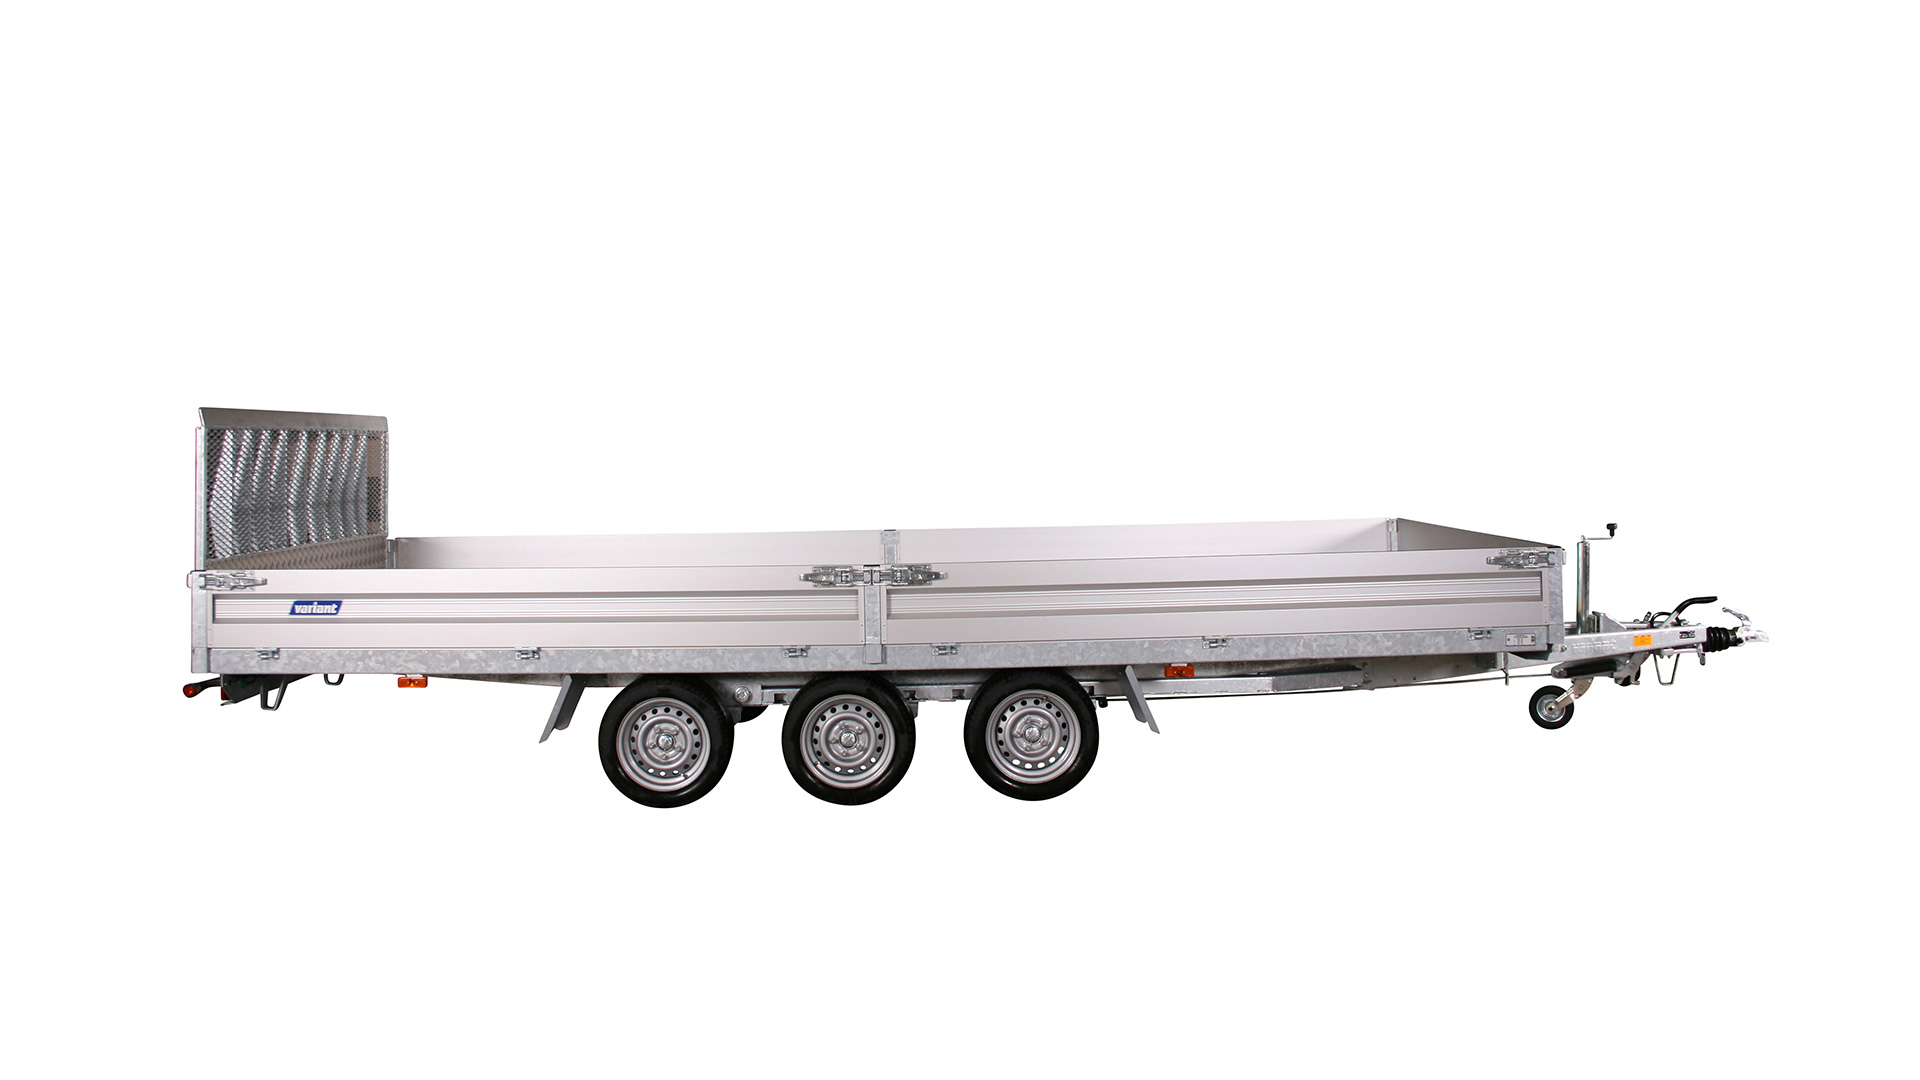 Variant PKW Anhänger Universaltransporter 3500 U5 - kippbar3500 kg, Ladefläche 5,20 x 2,10 m Tridem mit Bordwände